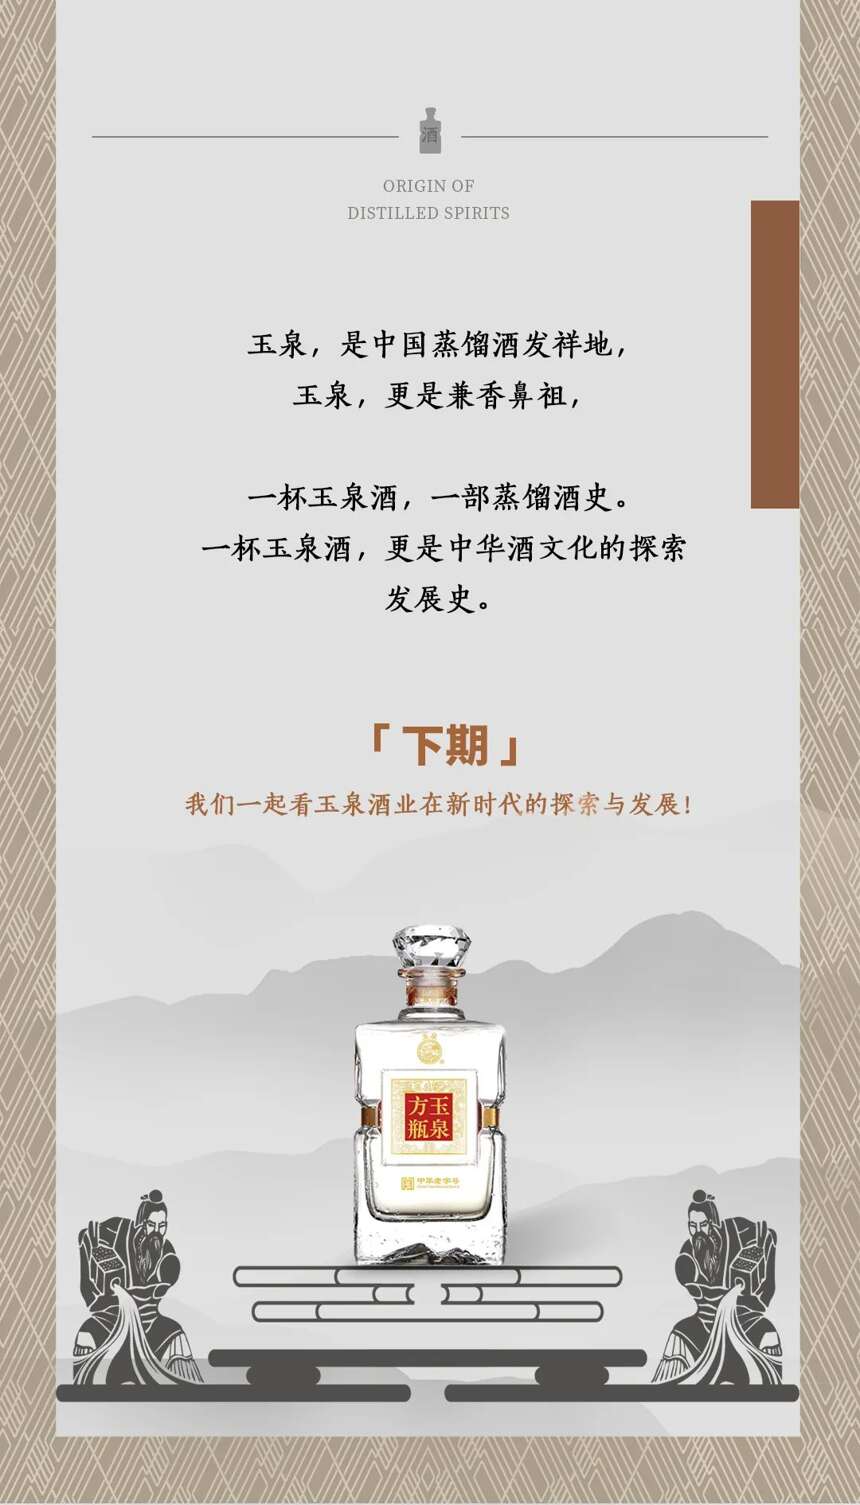 中国蒸馏酒的发祥地竟在这儿？